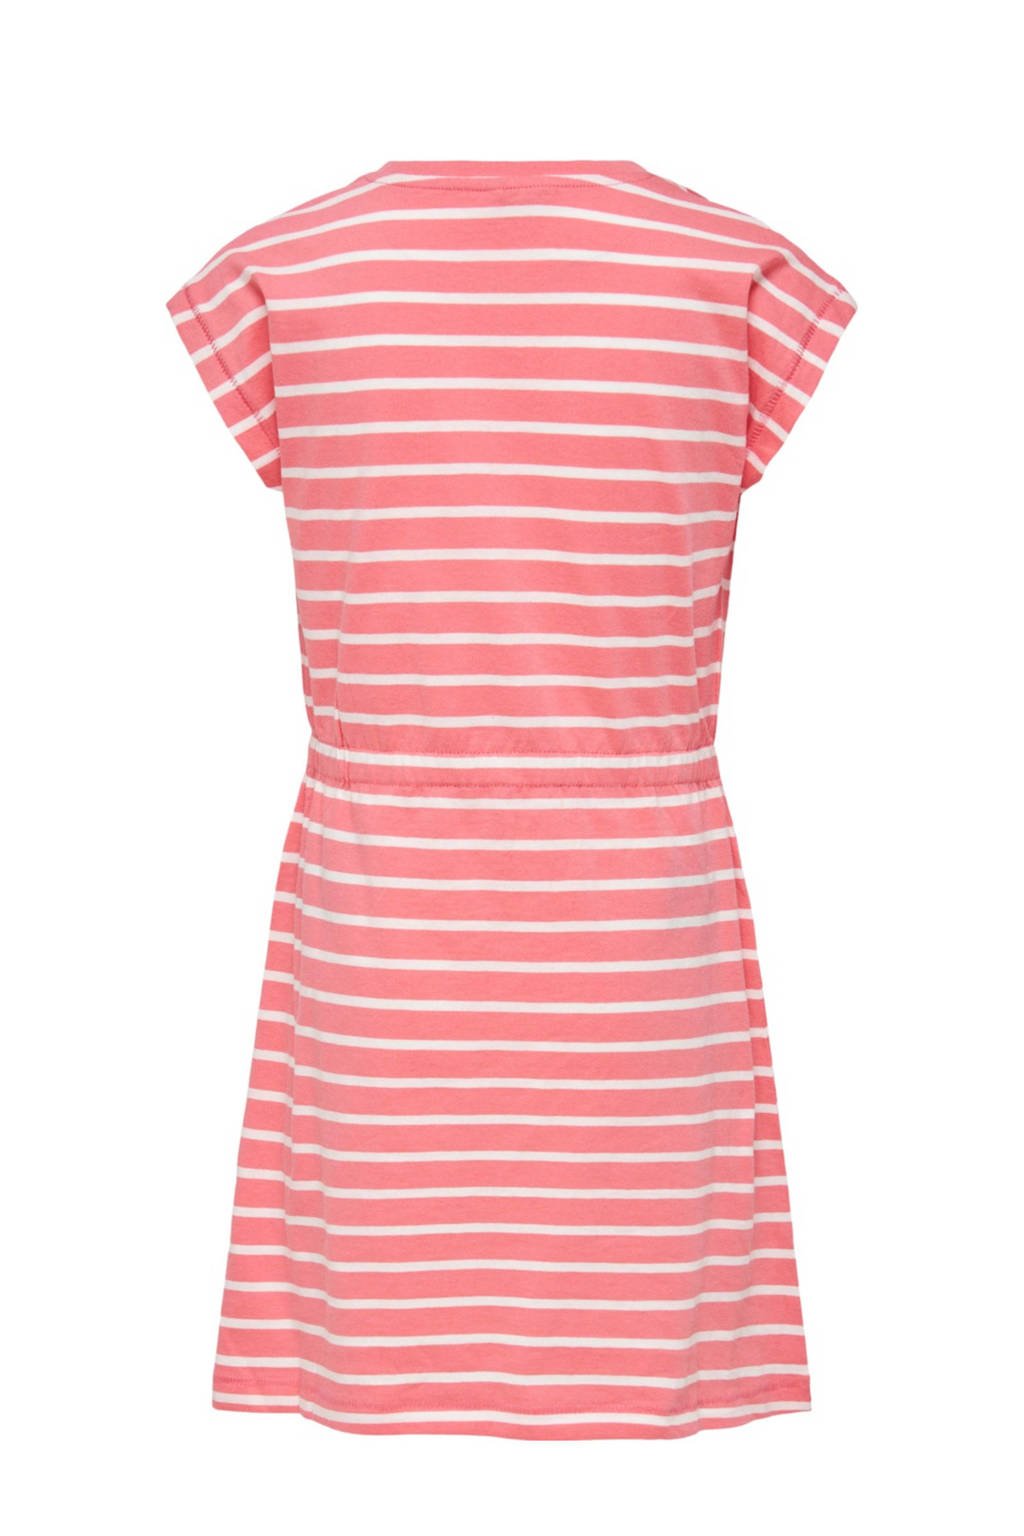 KIDS ONLY gestreepte A-lijn jurk KONMAY van biologisch katoen roze/wit